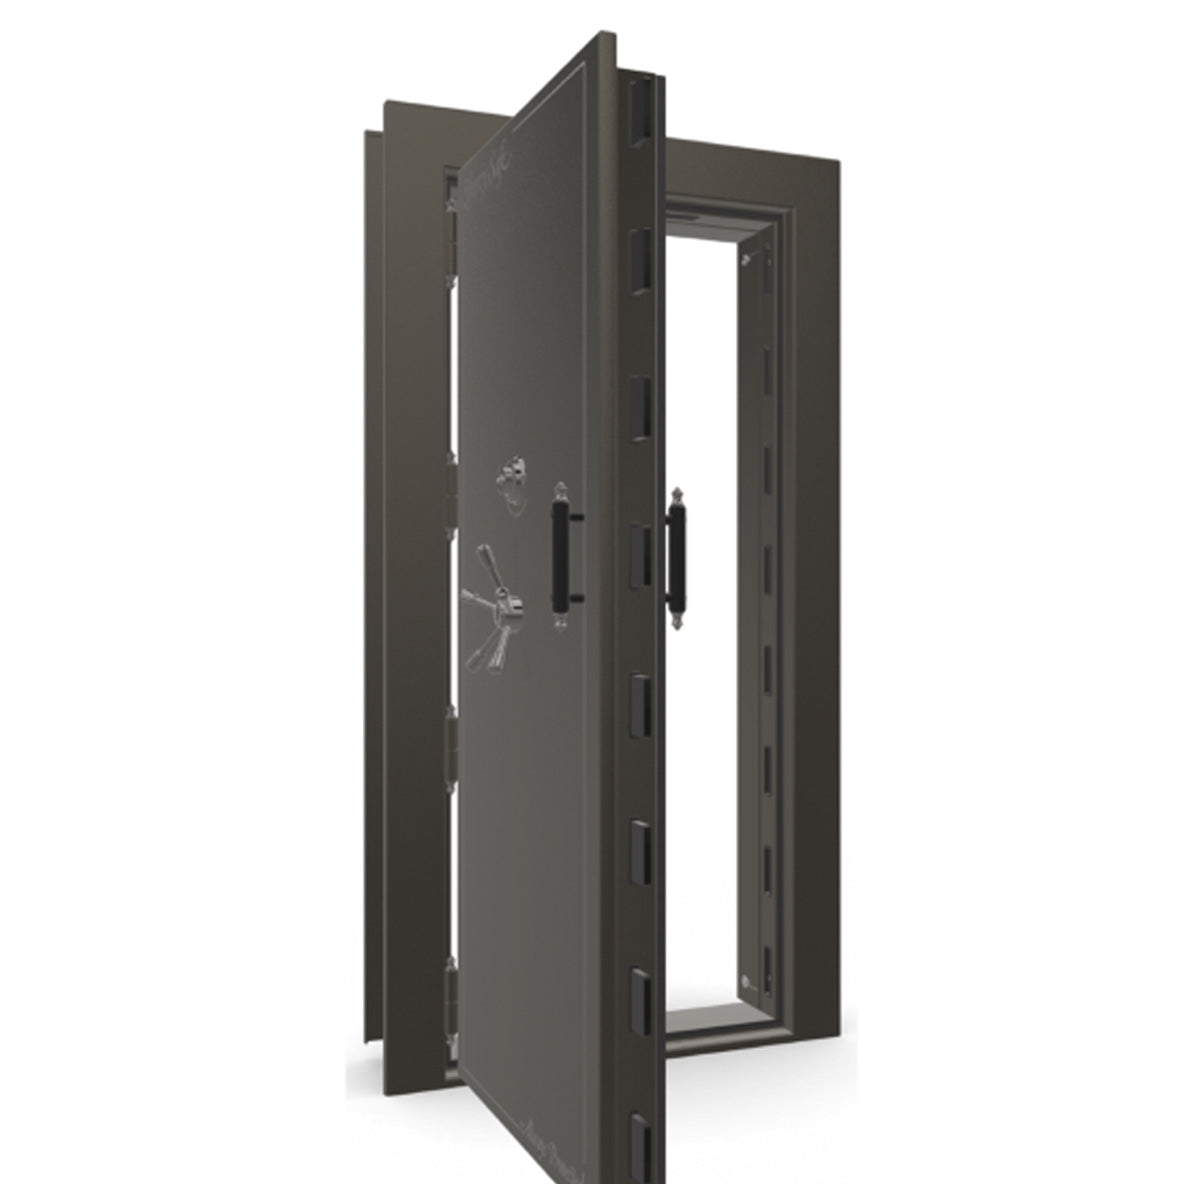 The Beast Vault Door in Gray Marble with Black Chrome Electronic Lock, Left Outswing, door open.